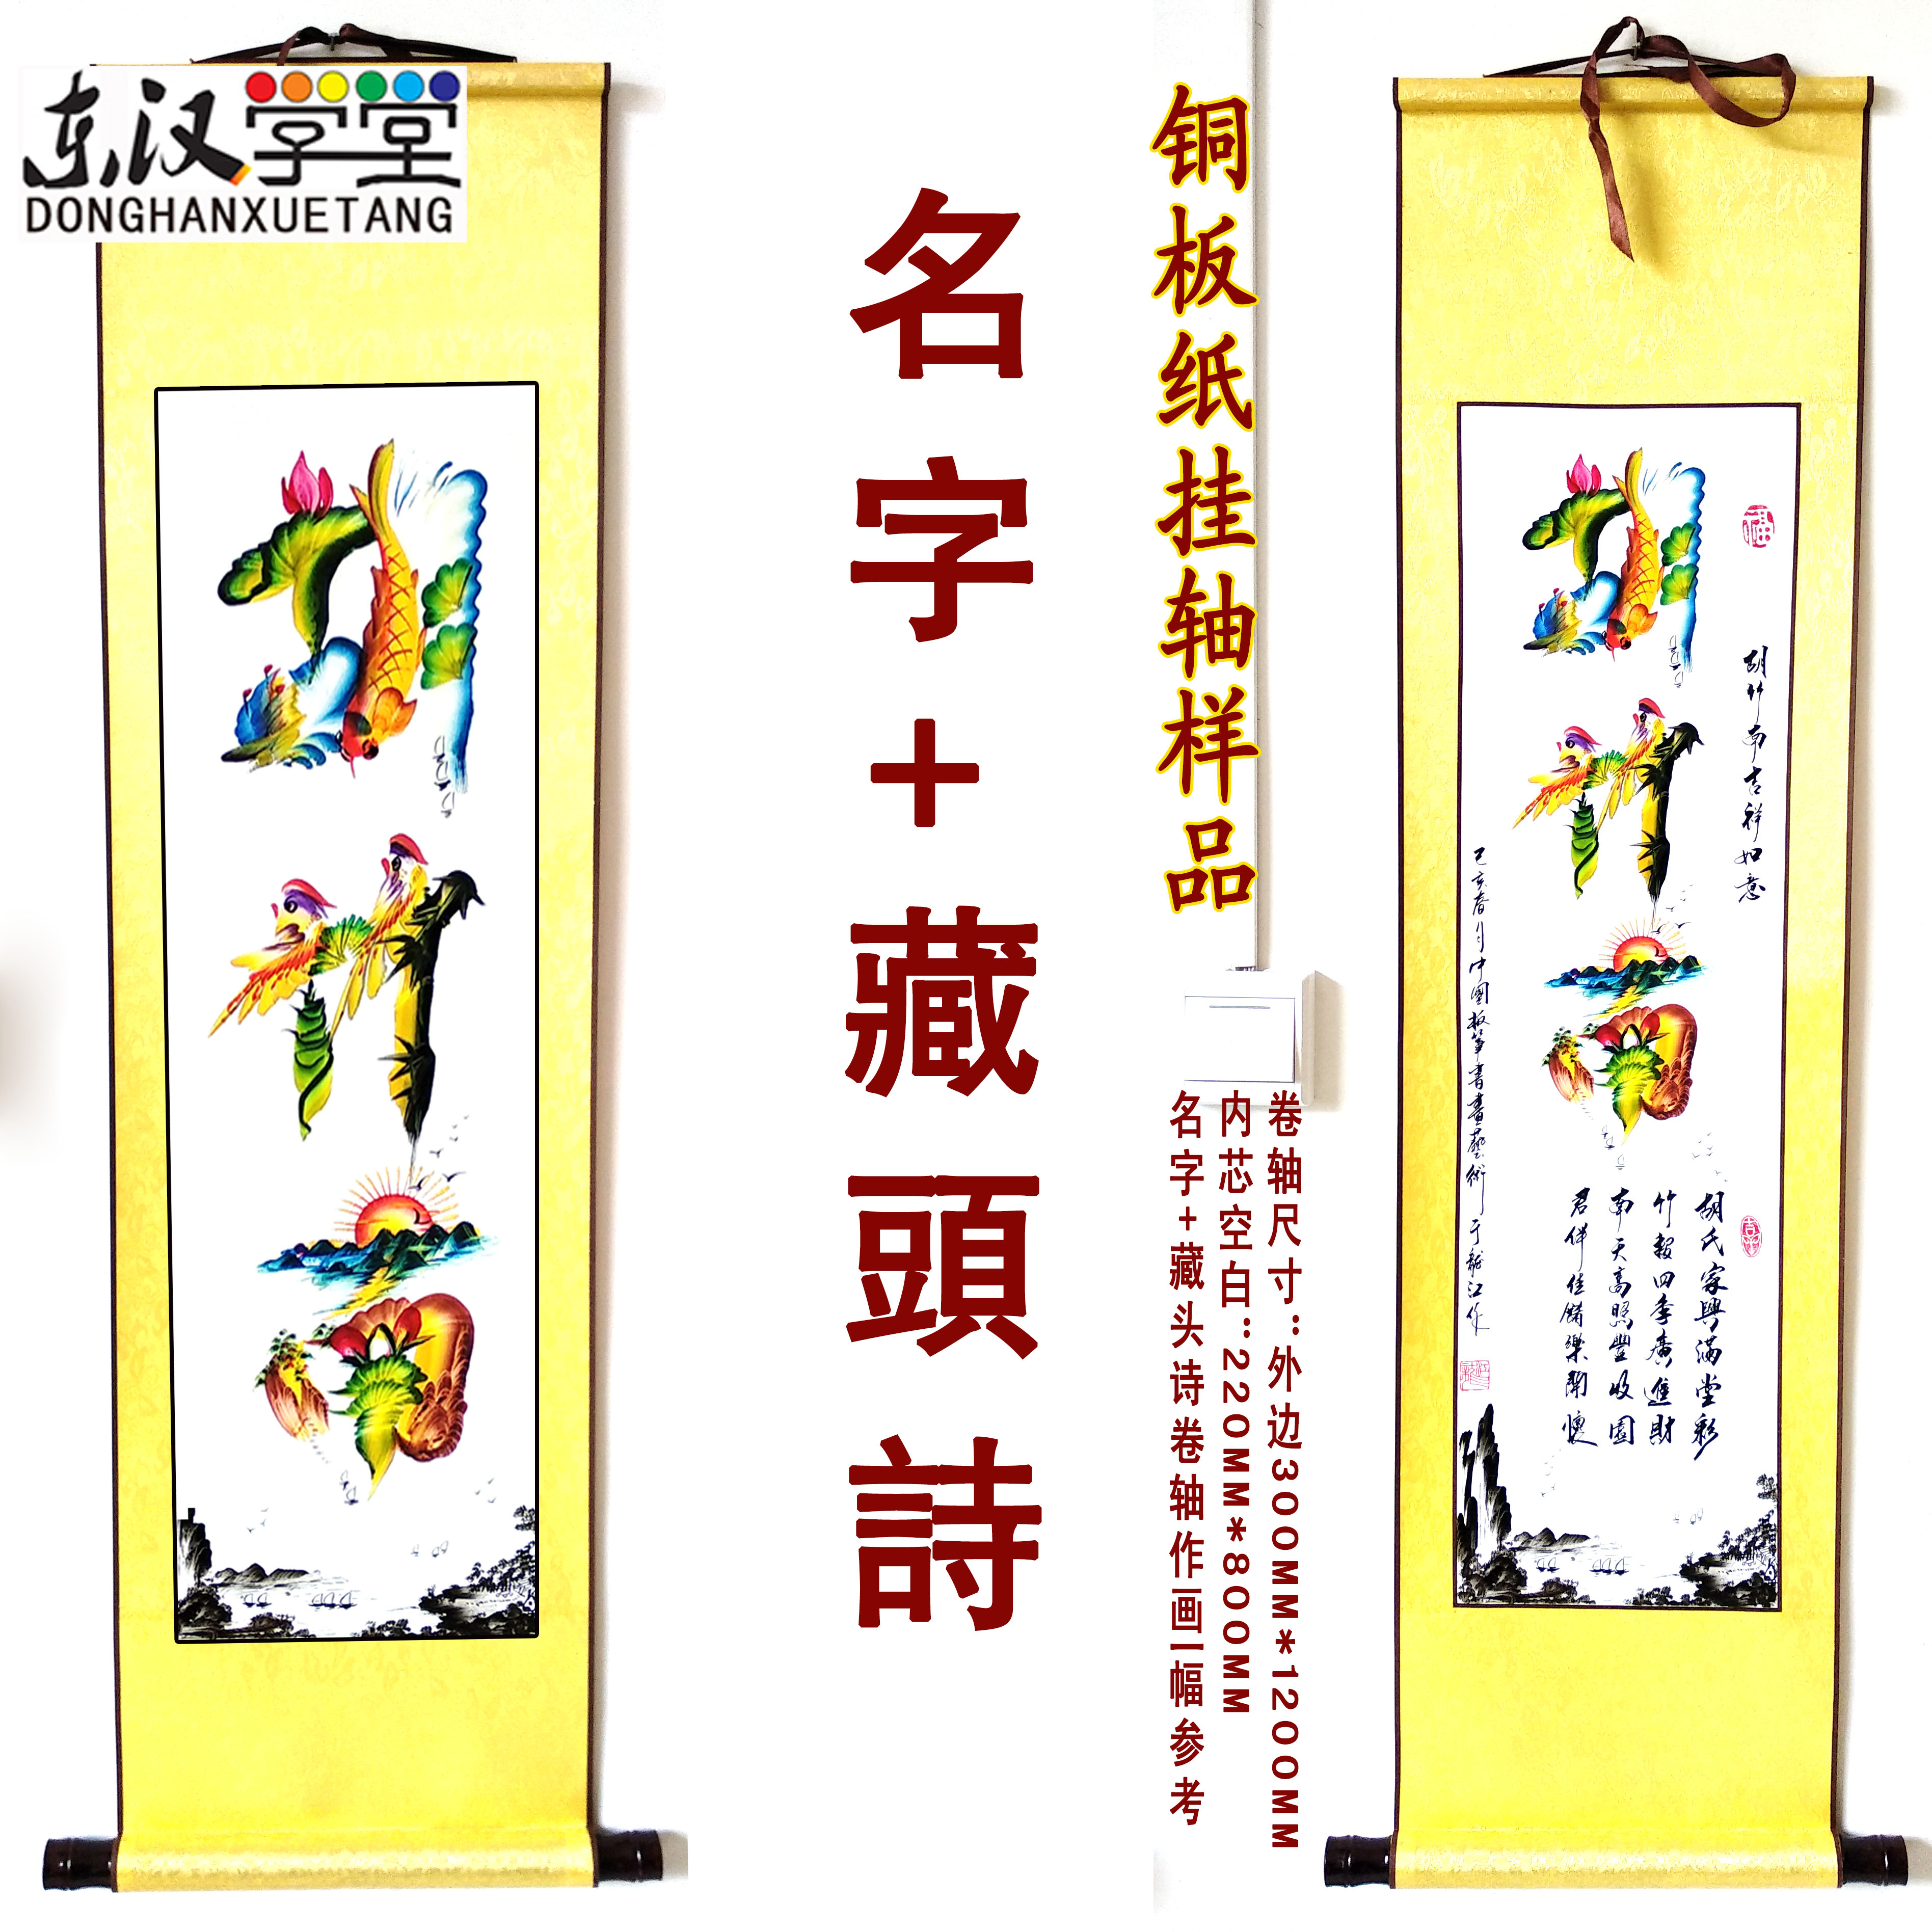 藏头诗名字作画繁体汉字中国书法